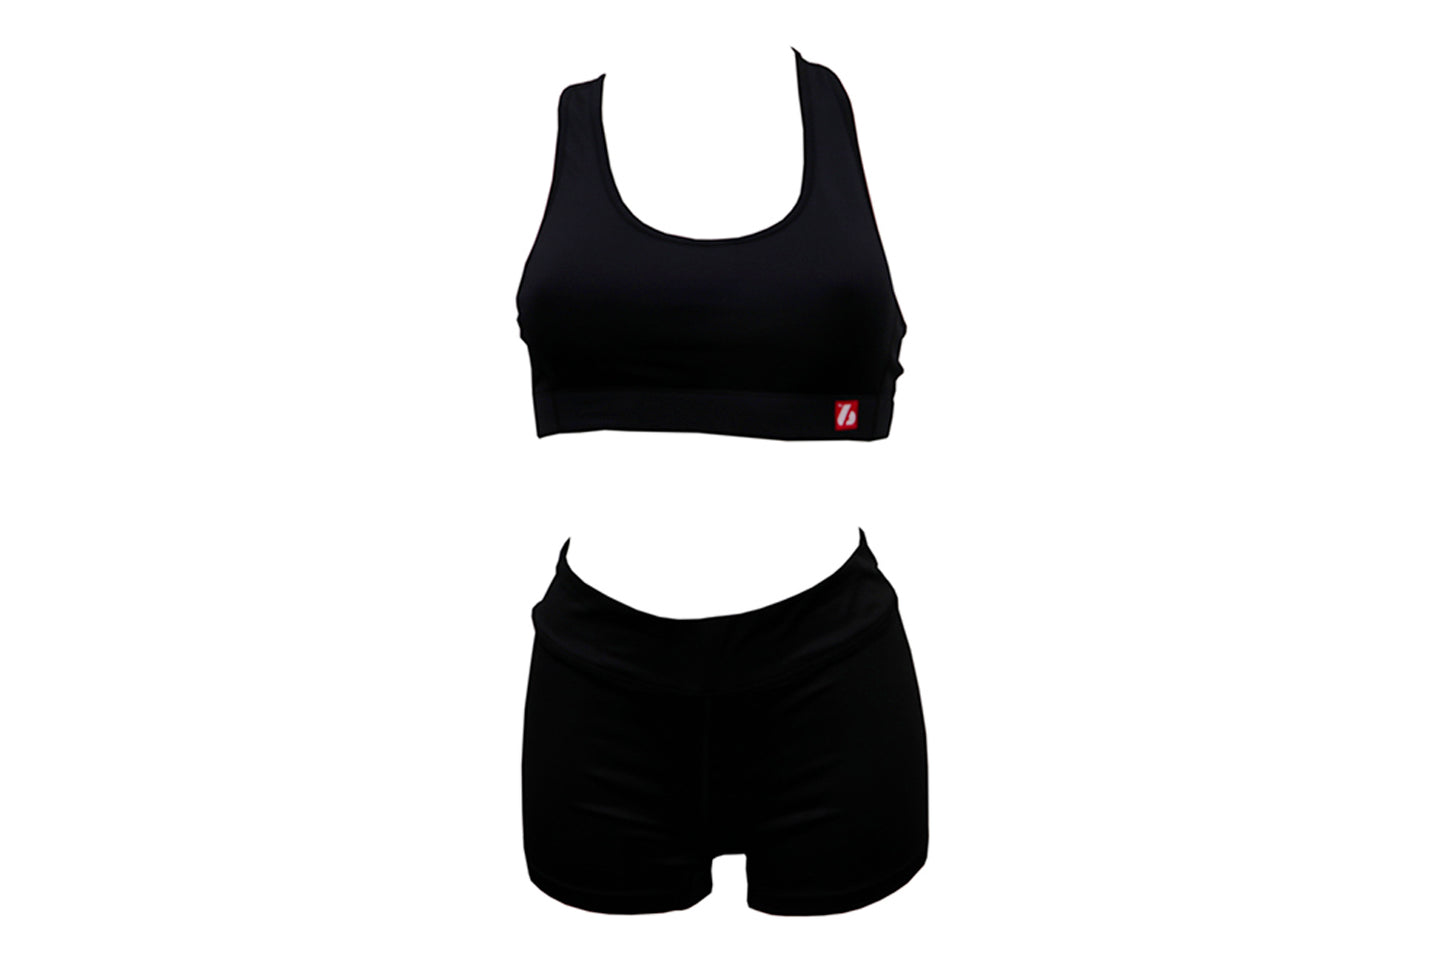 SBP-01 (underwear bra + shorts)